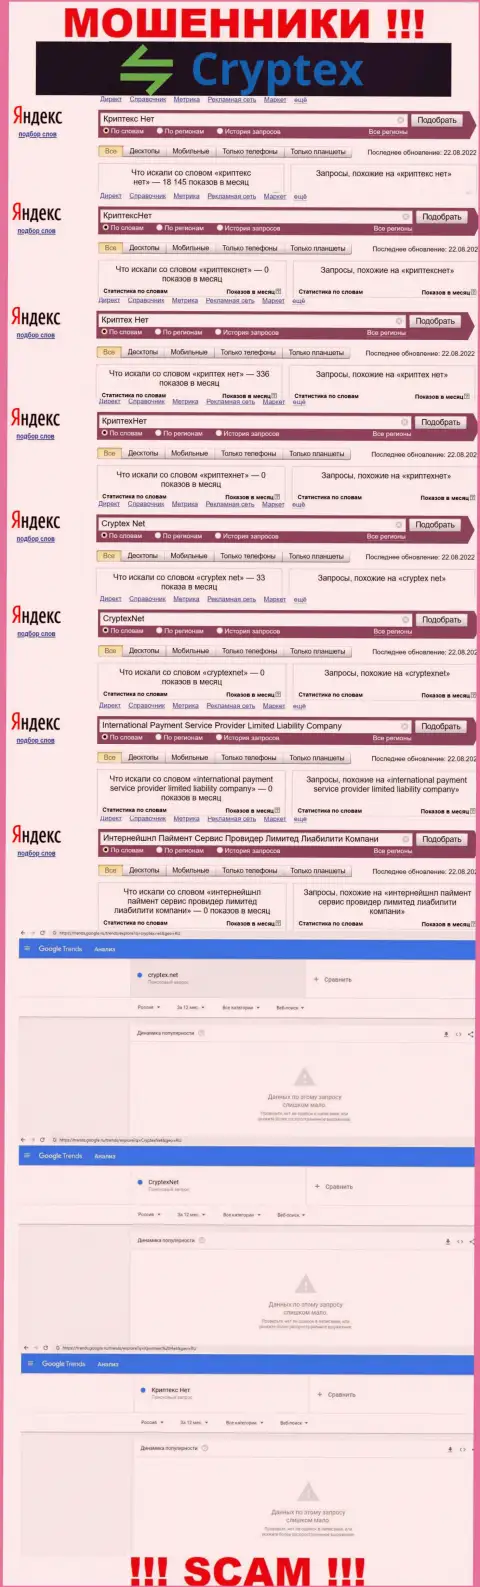 Скриншот итогов онлайн запросов по противозаконно действующей организации CryptexNet